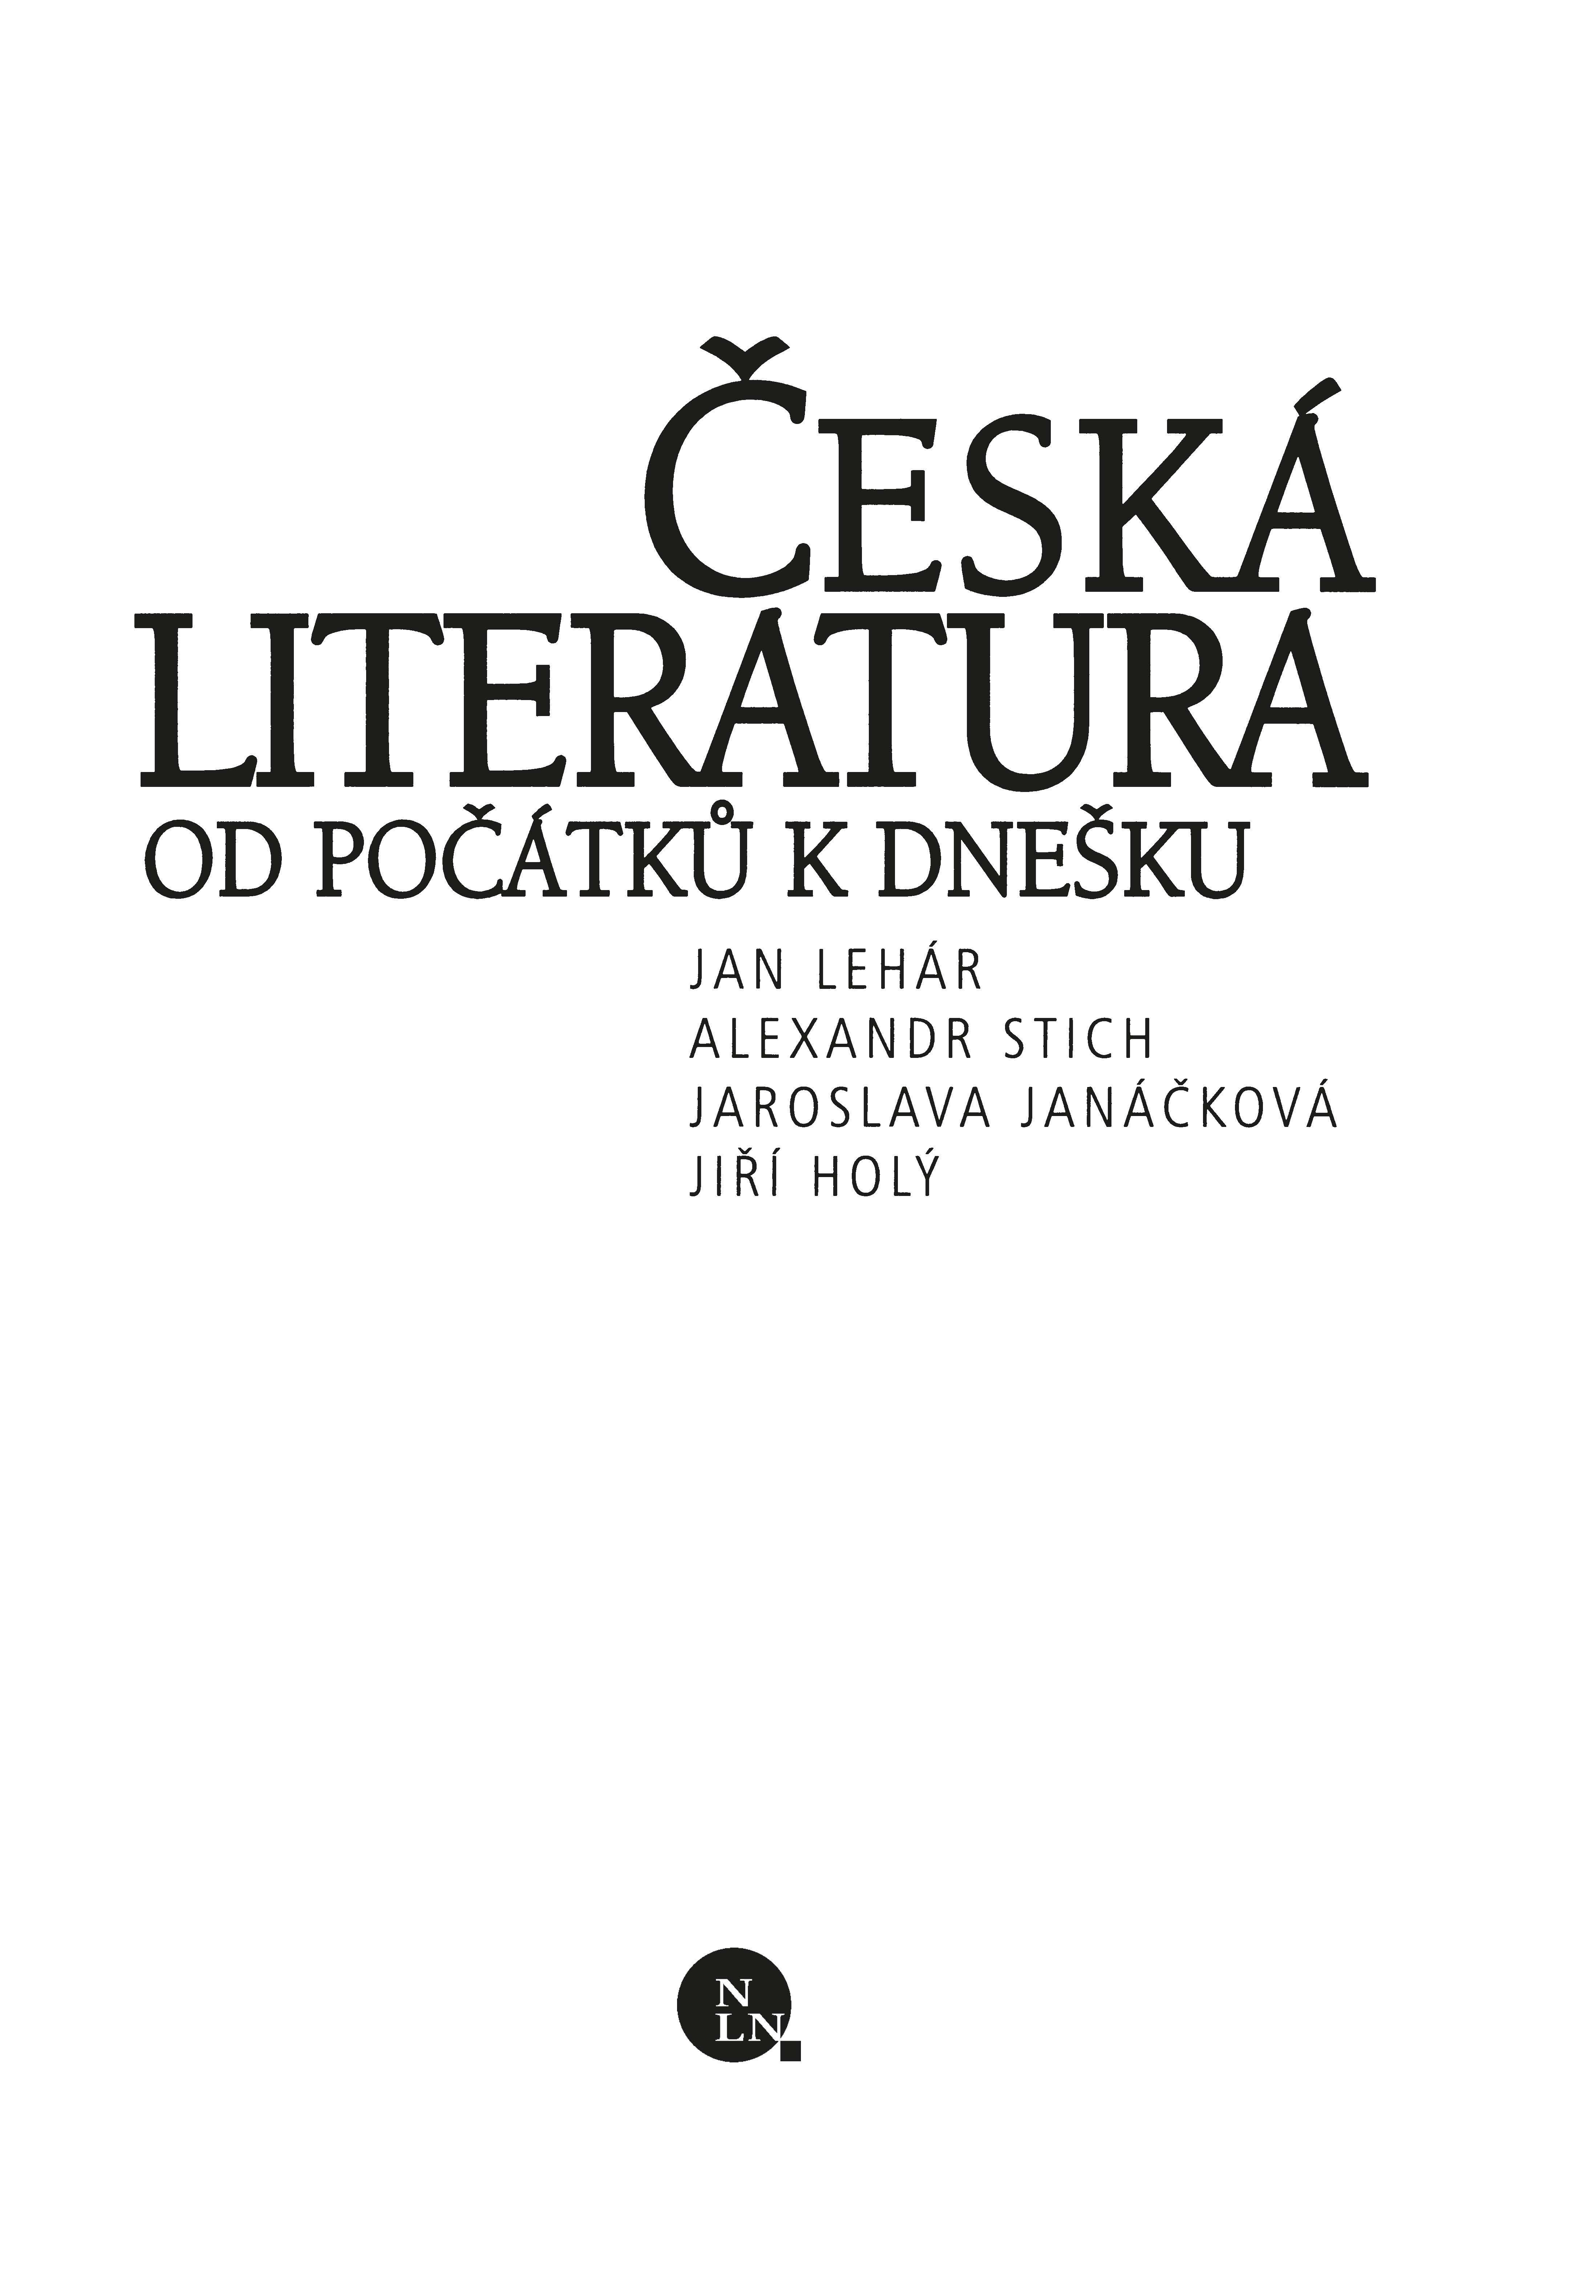 Česká literatura od počátků k dnešku ukázka-1